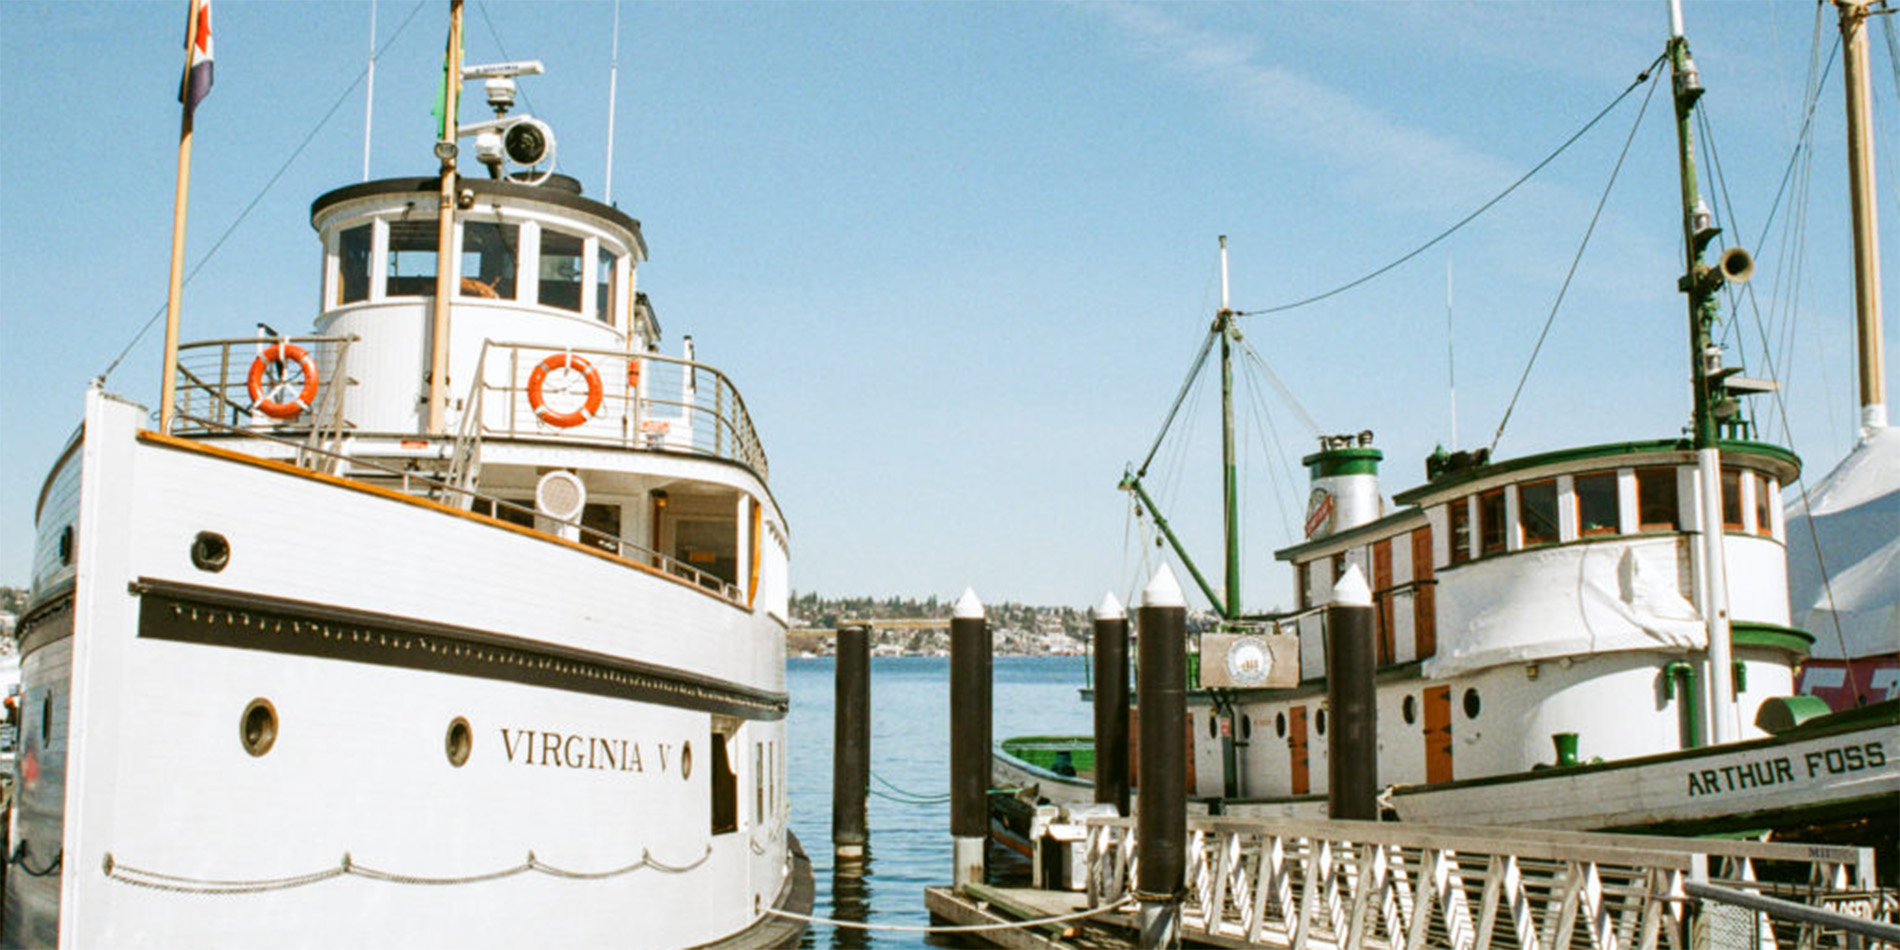 Virginia V and Arthur Foss vessels